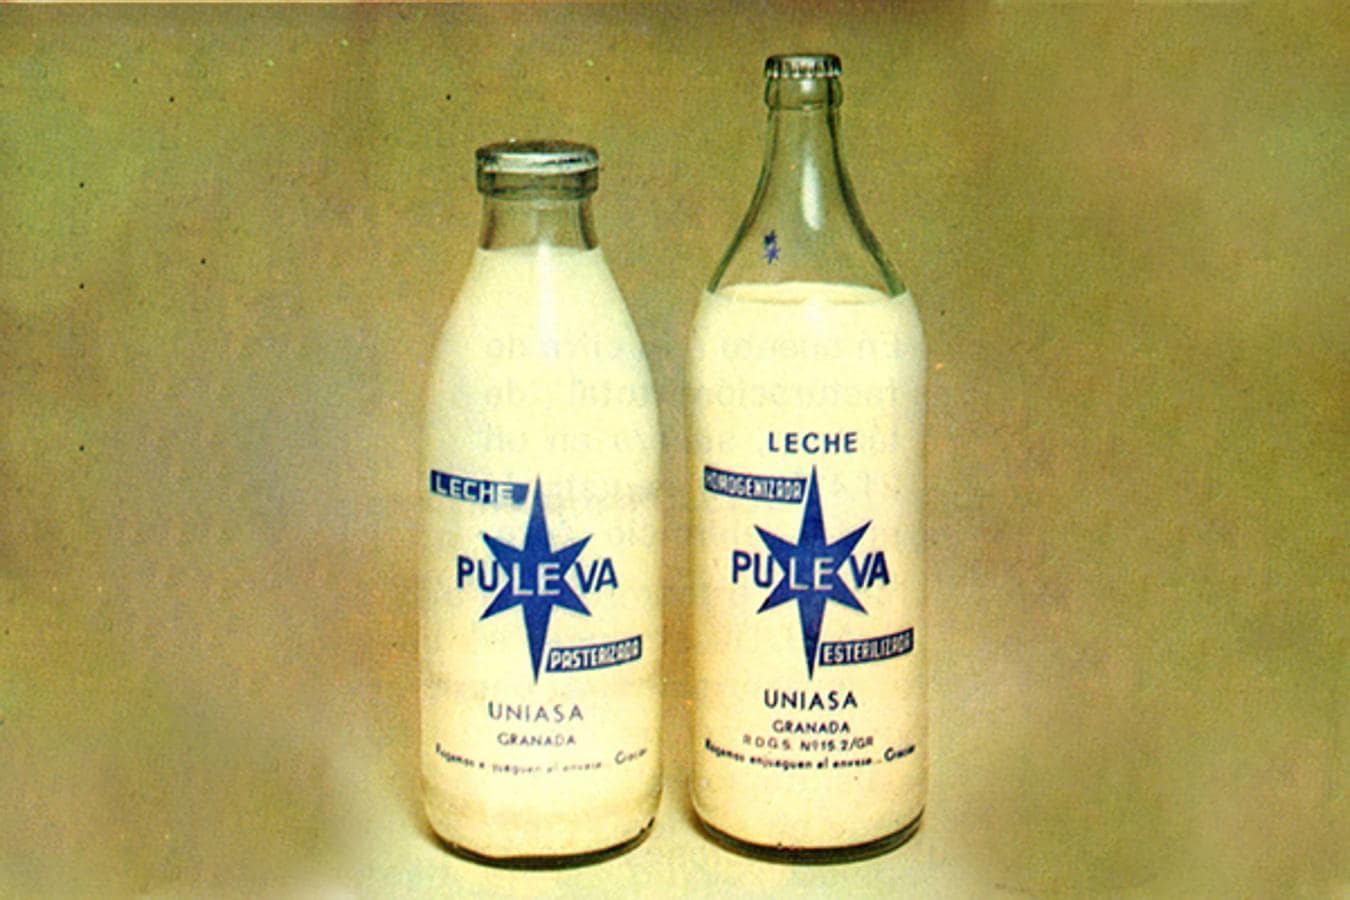 1971. UN ENVASE ICÓNICO. Las botellas de cristal de PULEVA se convirtieron en un clásico de los hogares granadinos, contribuyendo a reafirmar la calidad percibida de la marca. En la imagen, envases de botella cristal de leche pasterizada y estéril de 1 litro.